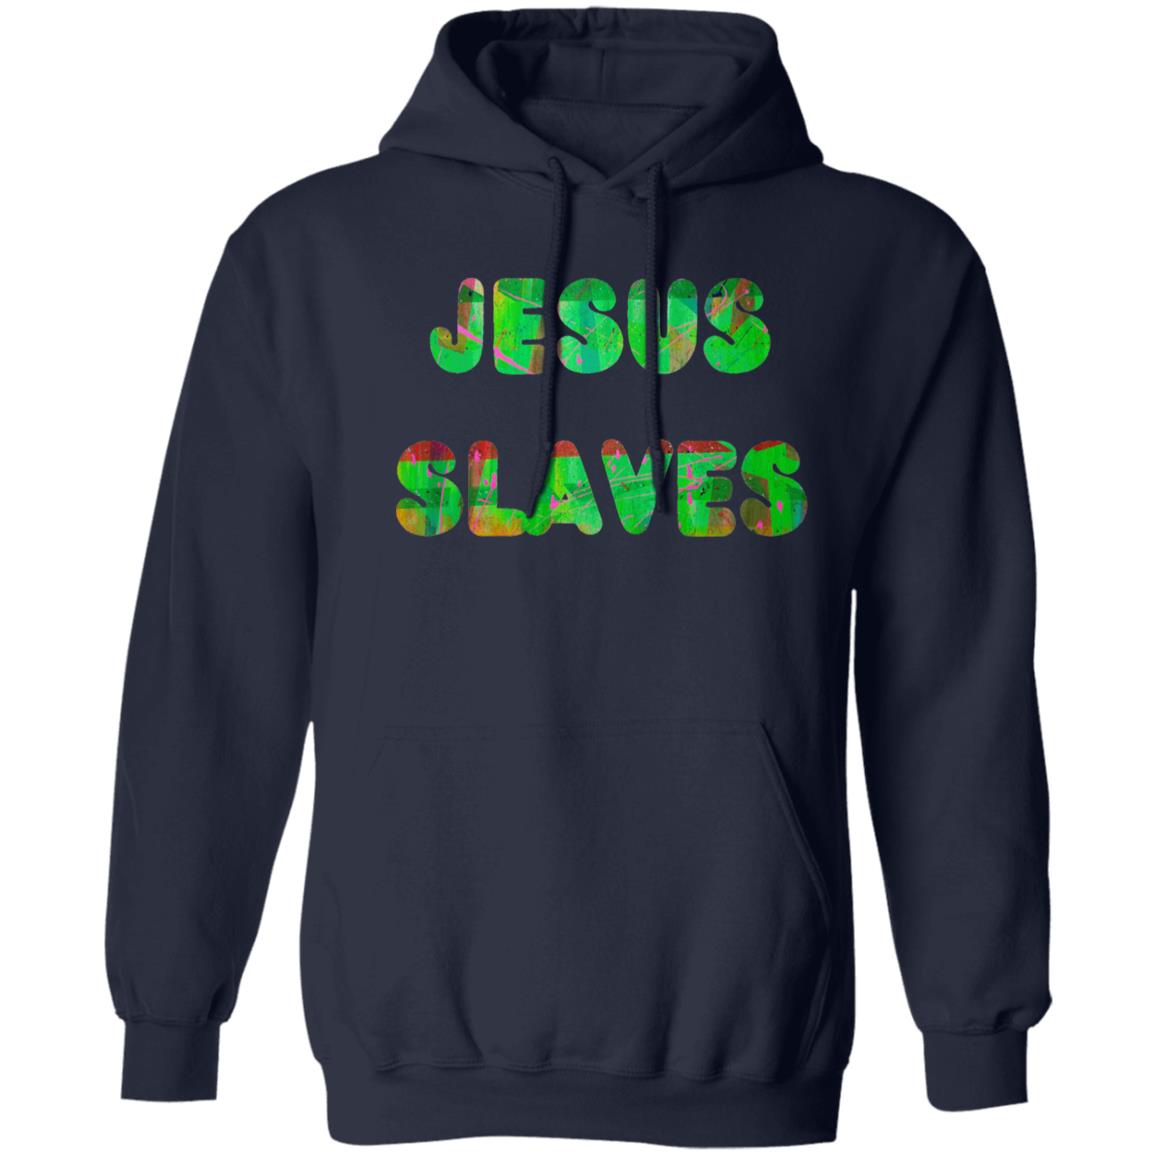 Gavin Scott JESUS SLAVES Pullover Hoodie (Genderless S-3XL)